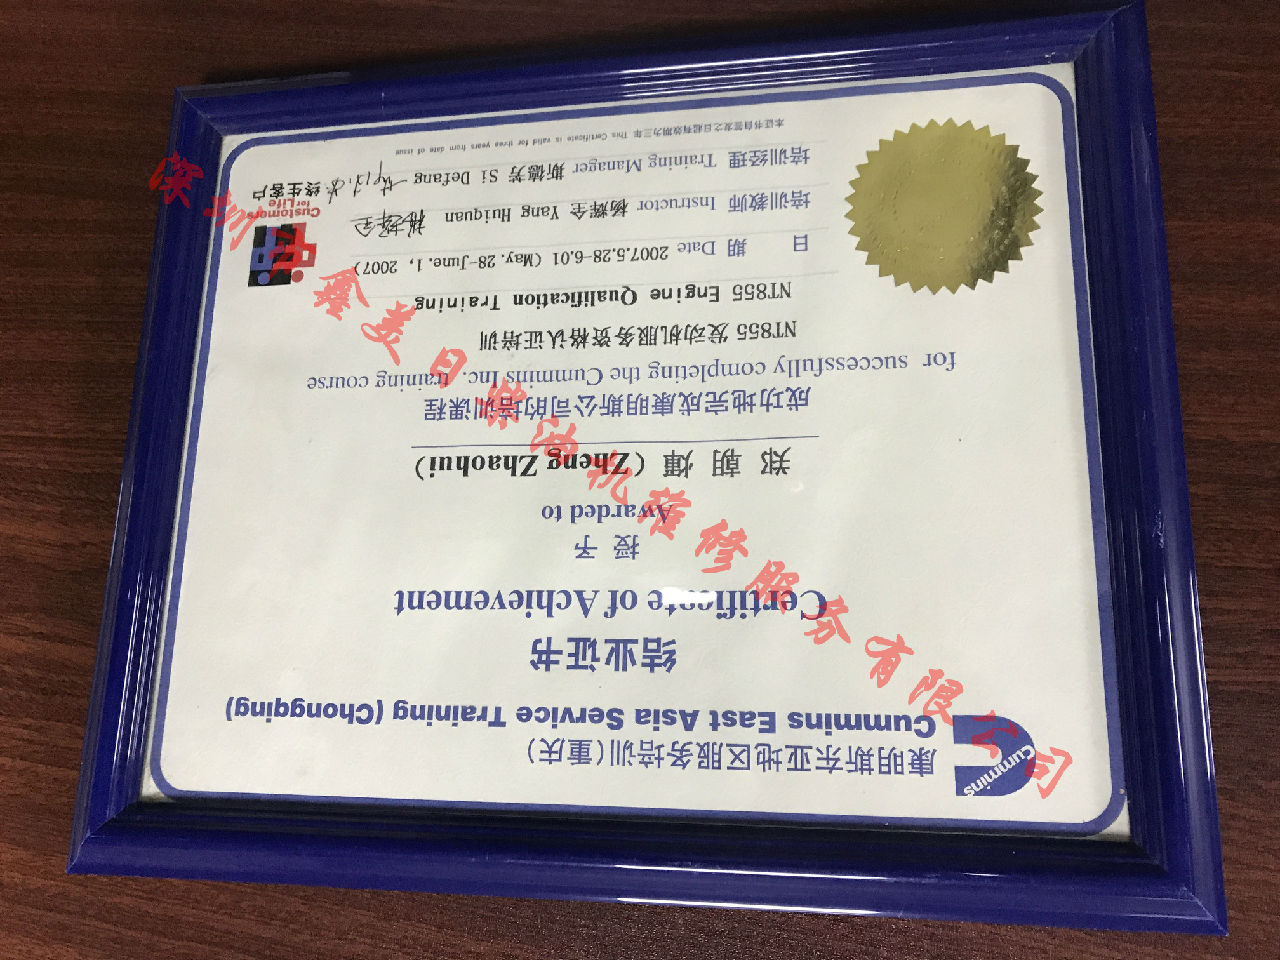 2007年 重庆康明斯 郑朝辉 NTA855 服务资格认证培训证书